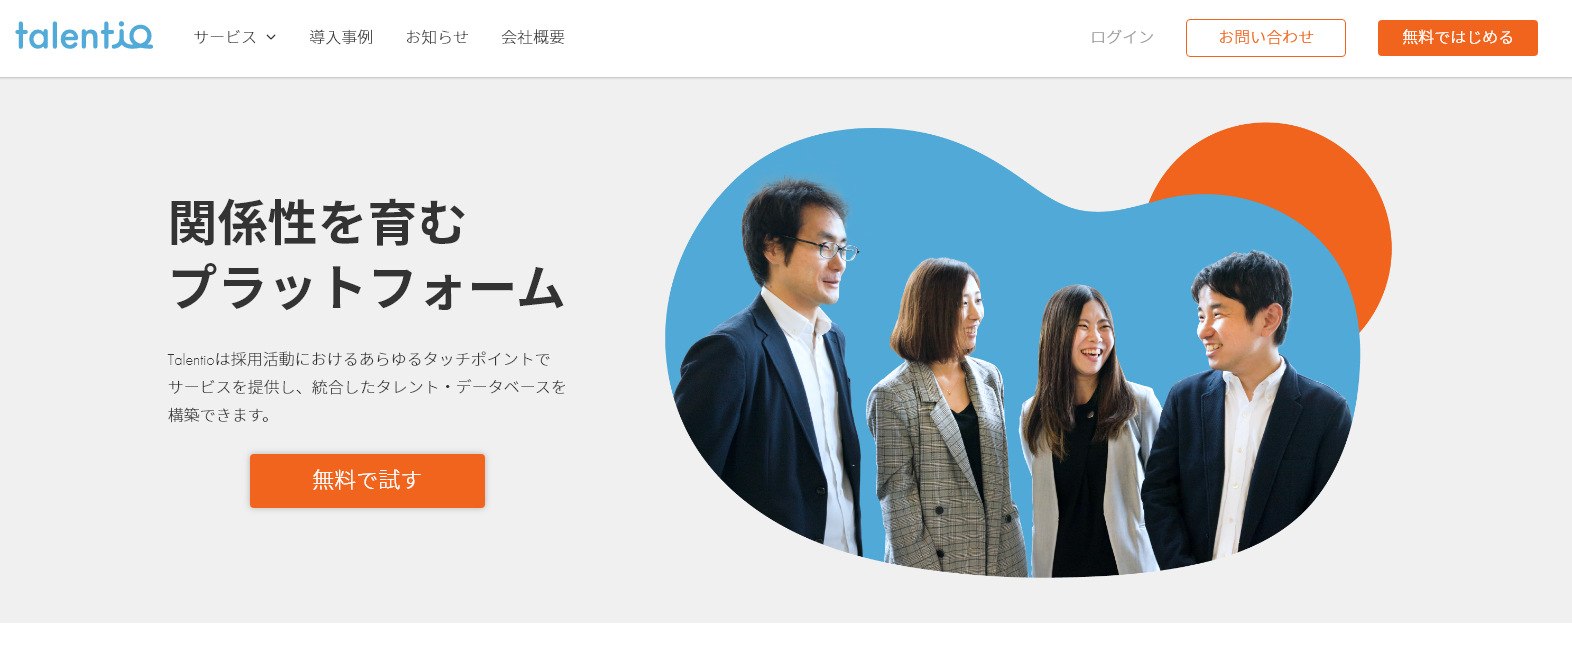 採用管理システム『Talentio』、WEB面接サービス『harutaka』との連携を開始